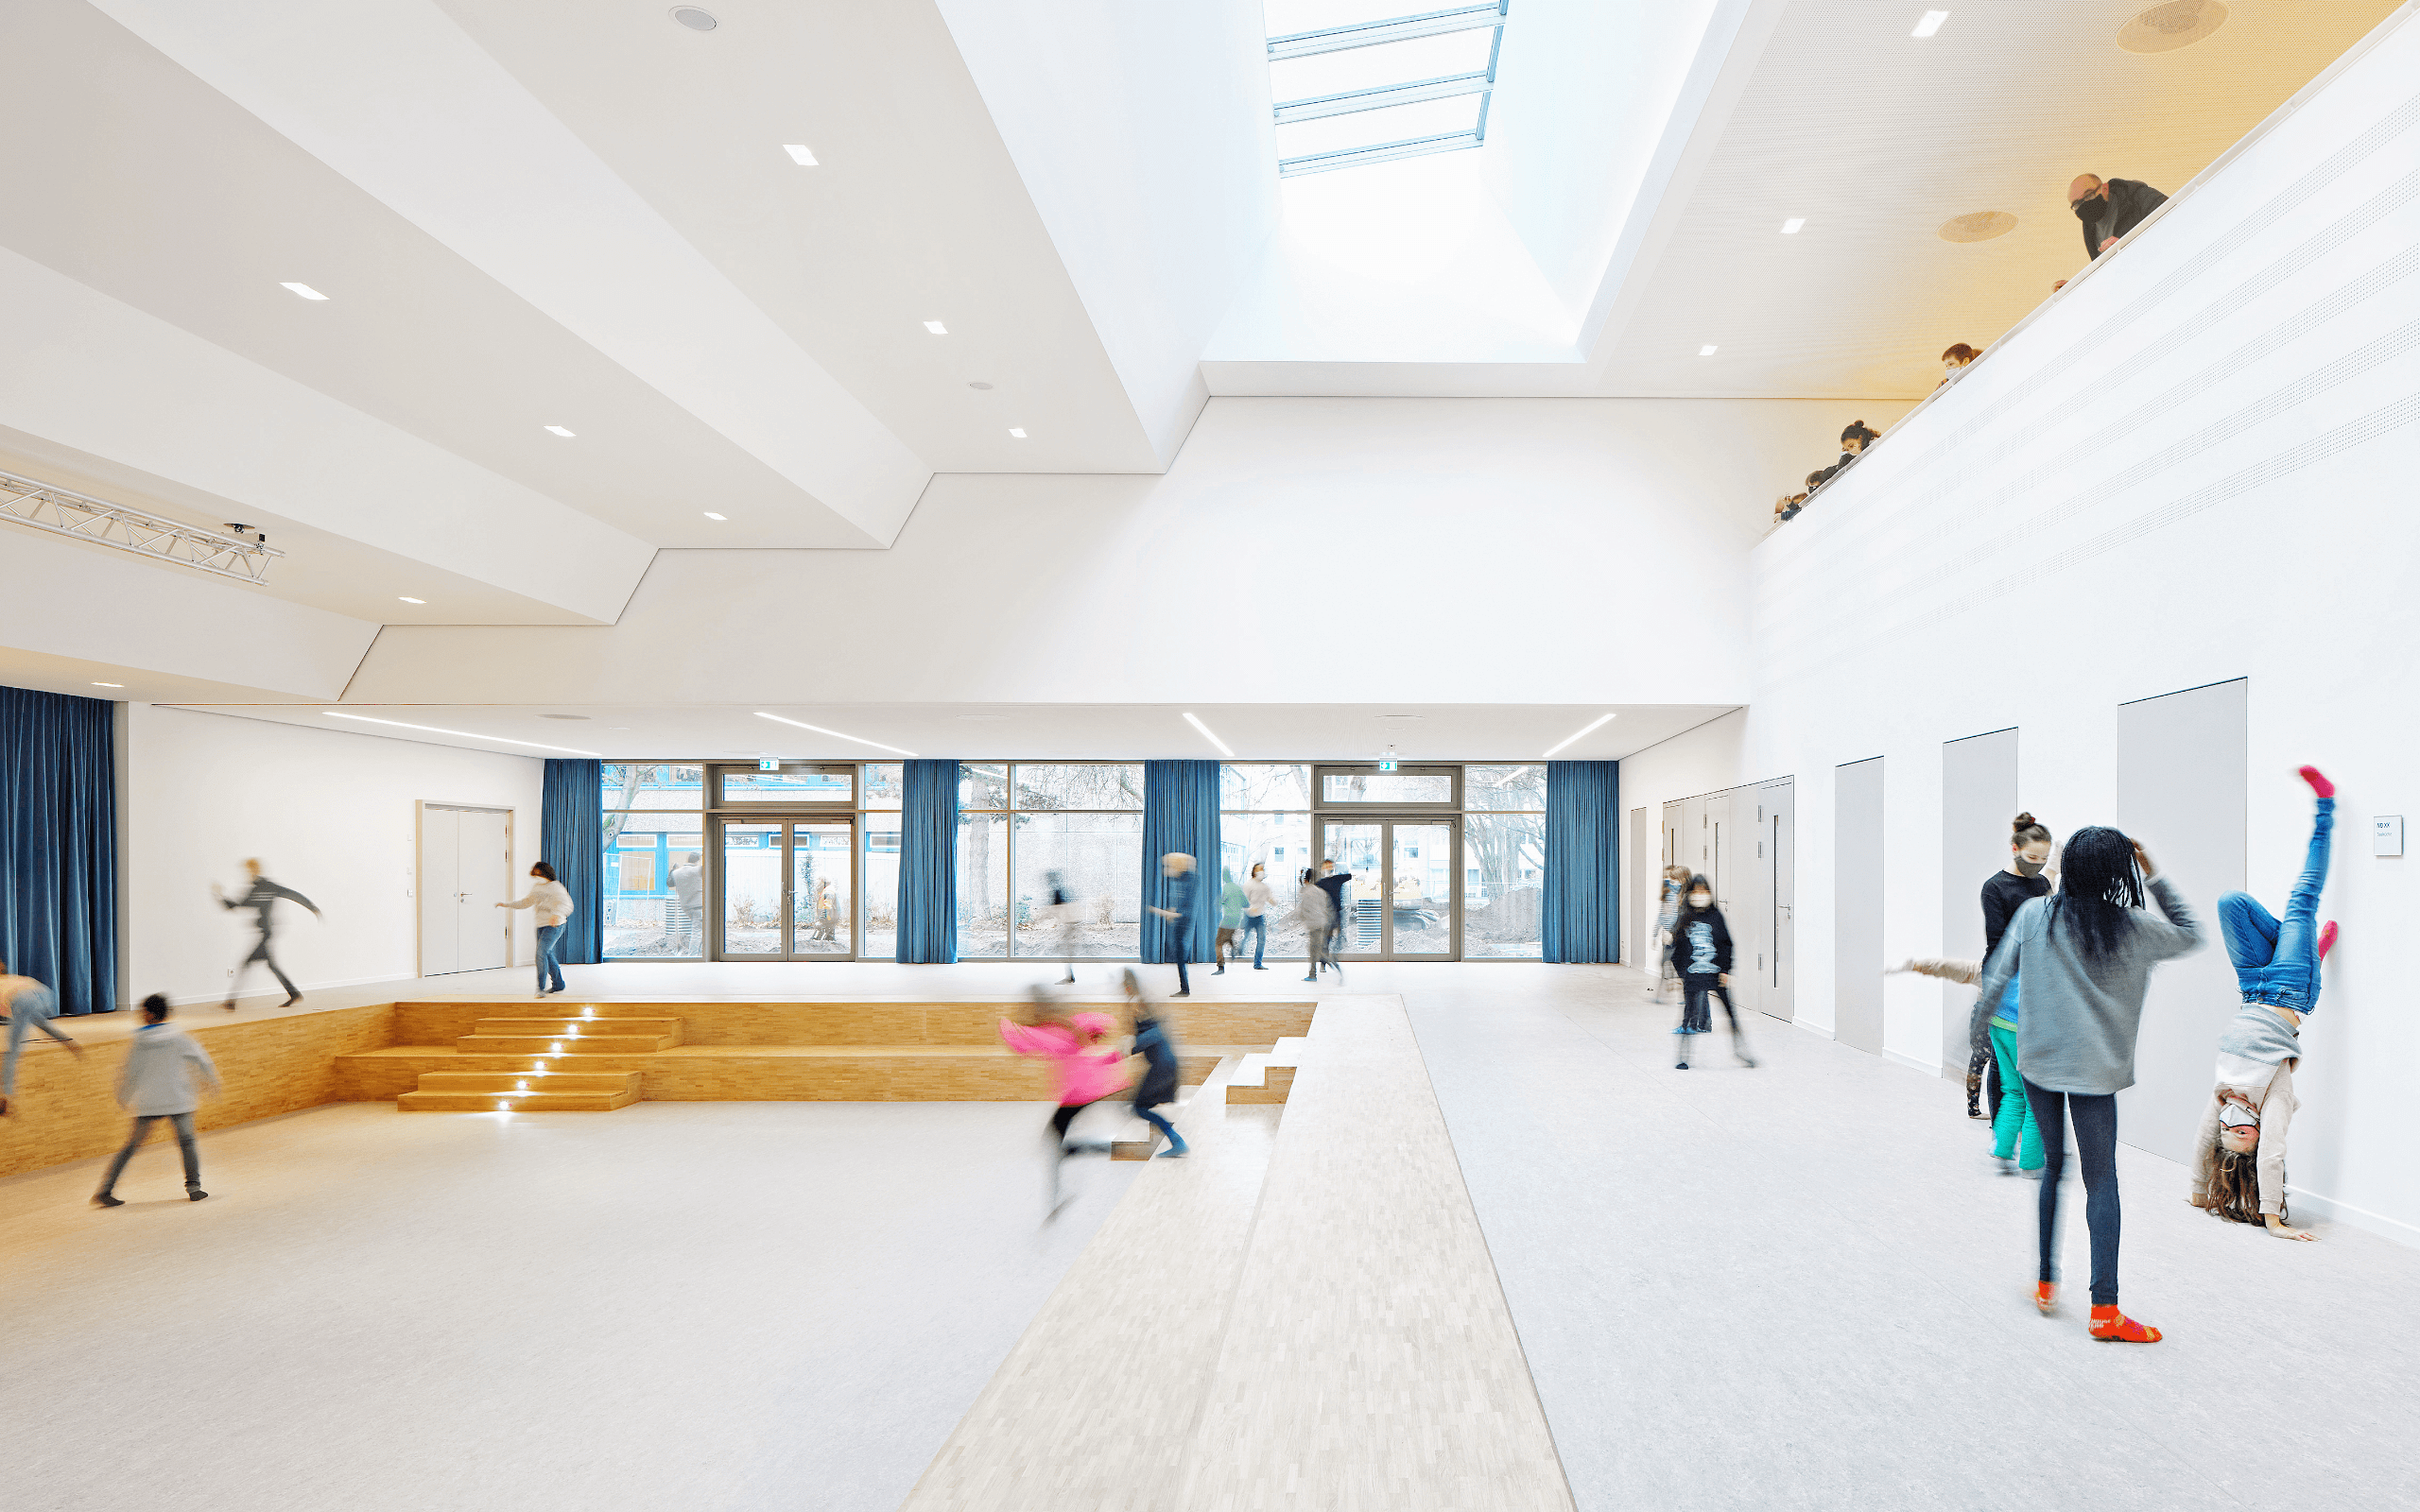 Aula Margaretha-Rothe-Gymnasium – Ralf Buscher